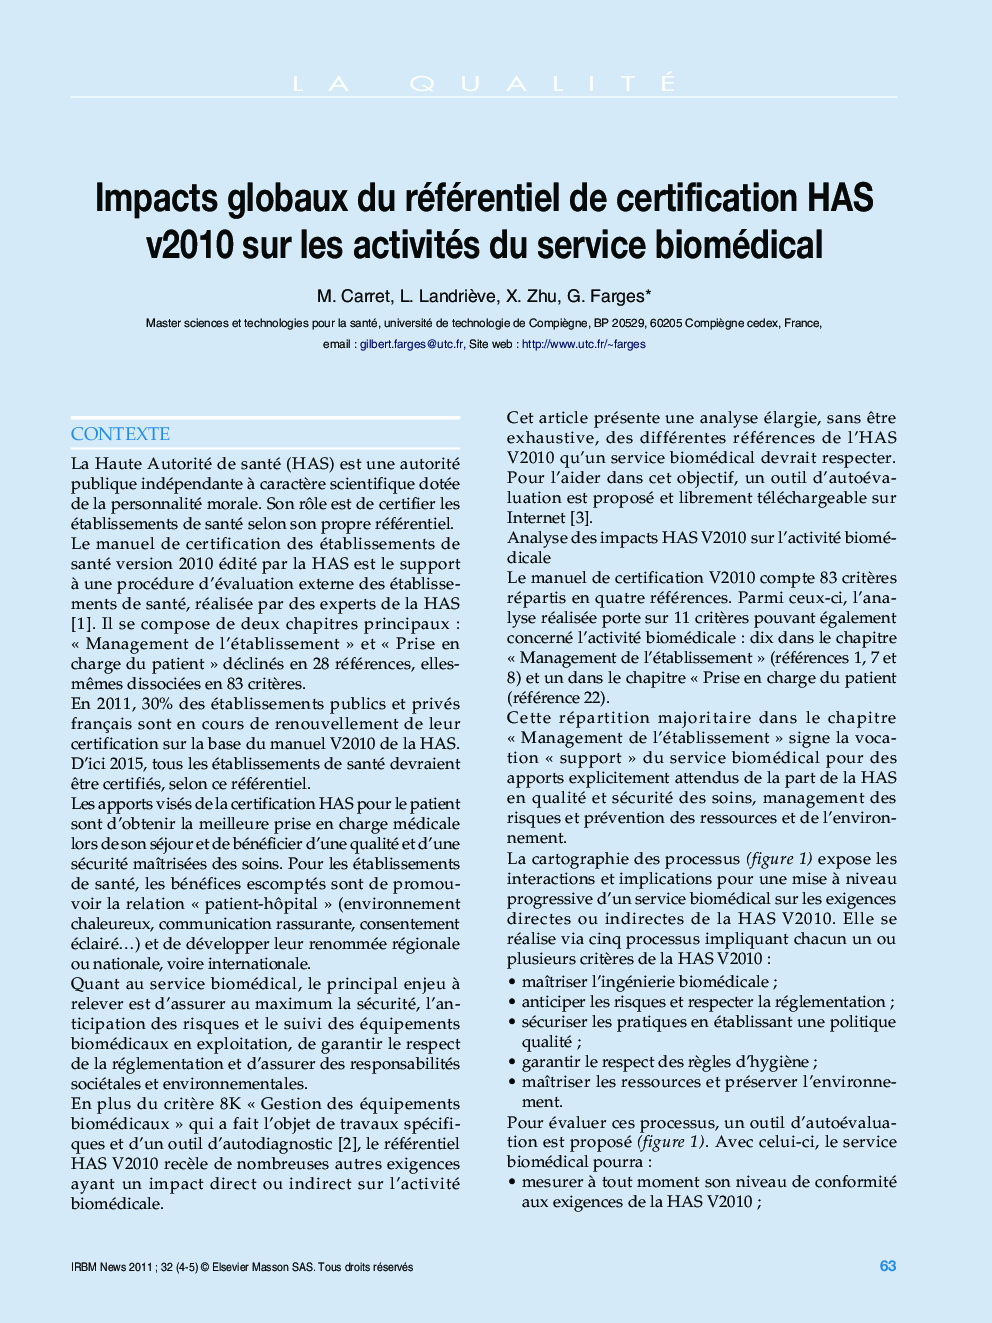 Impacts globaux du référentiel de certification HAS v2010 sur les activités du service biomédical